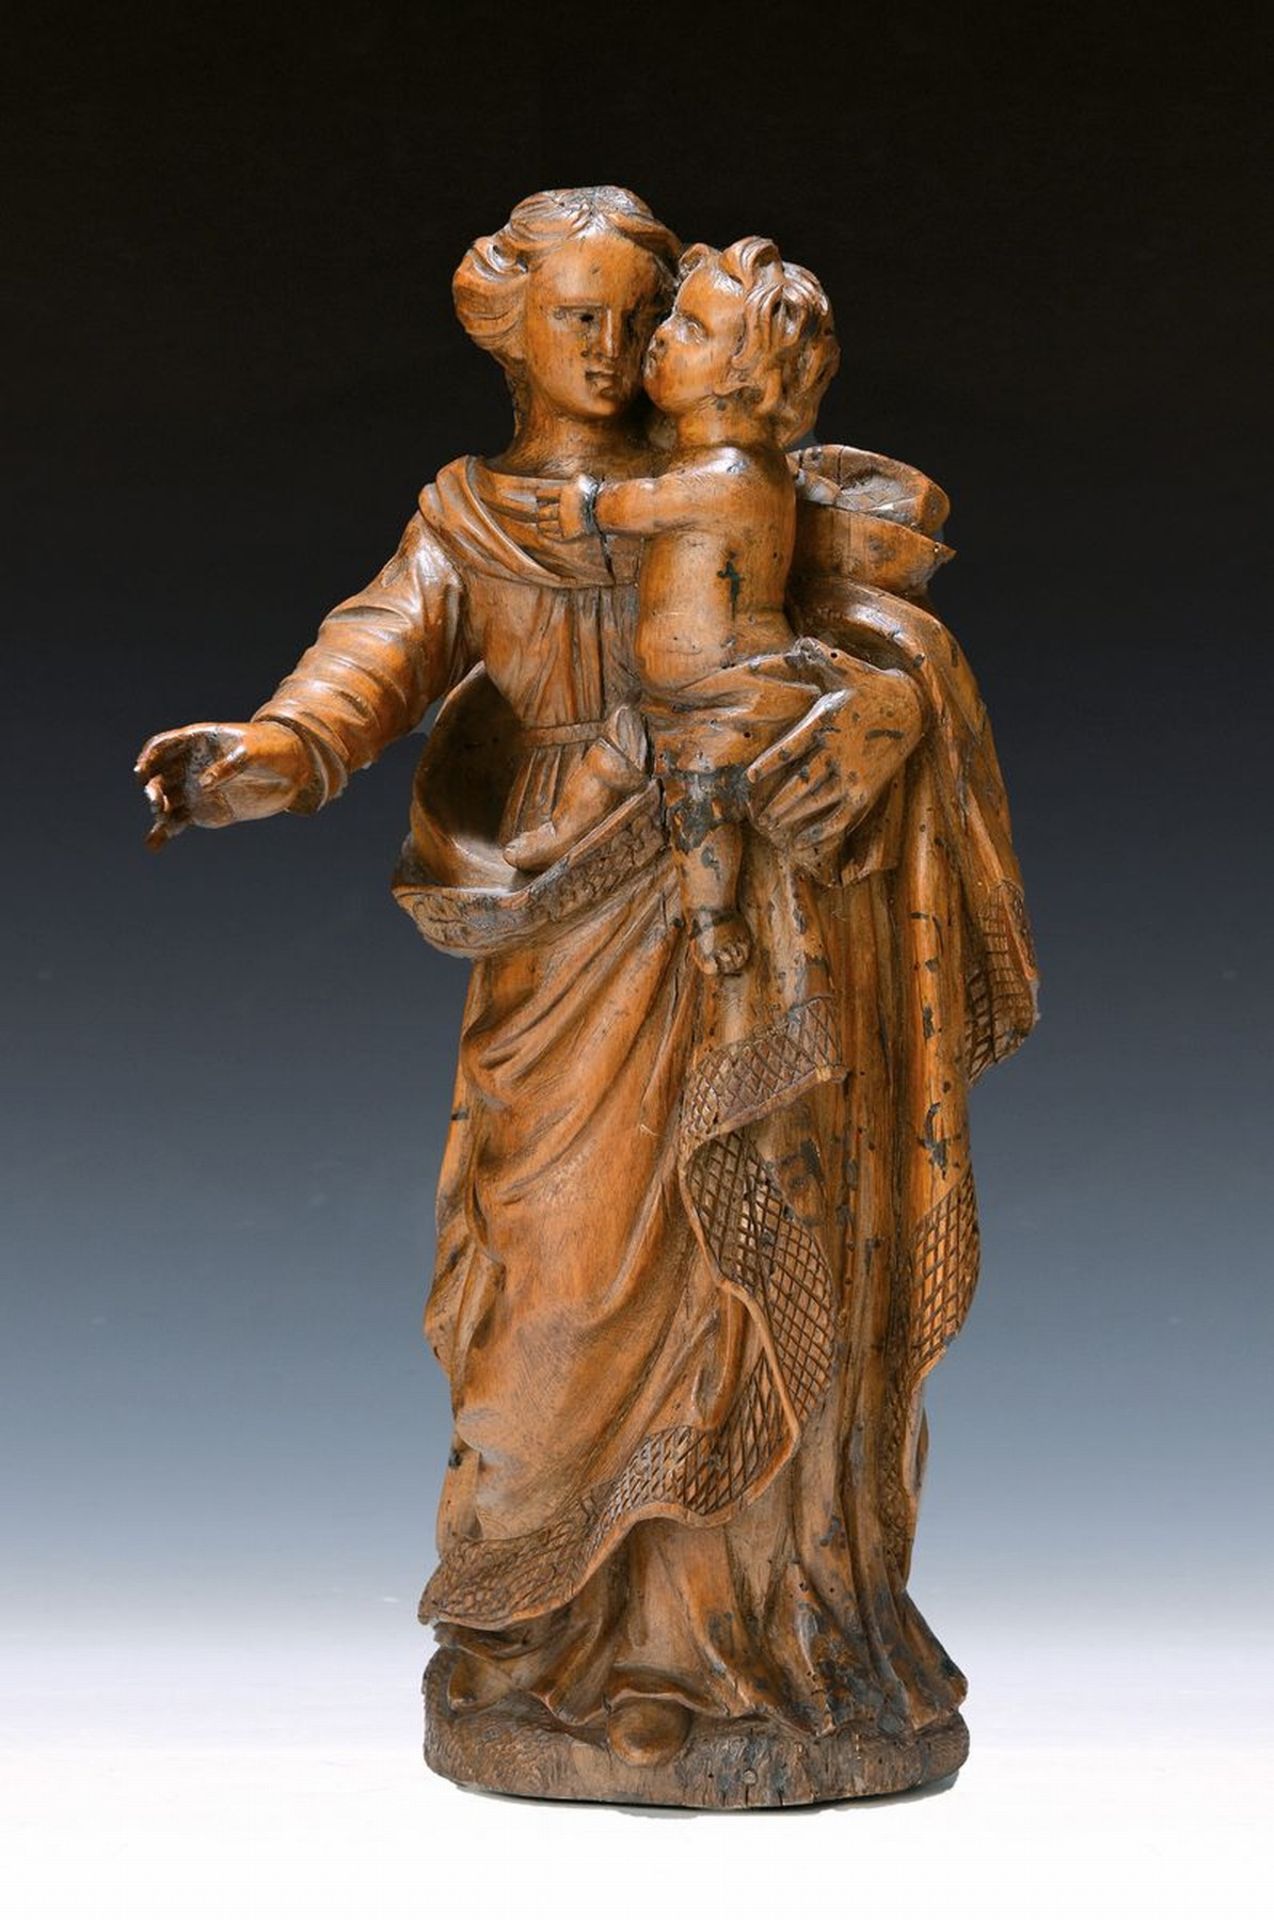 Heiligenfigur, süddeutsch, 17. Jh.,  Obstholz, Mutter